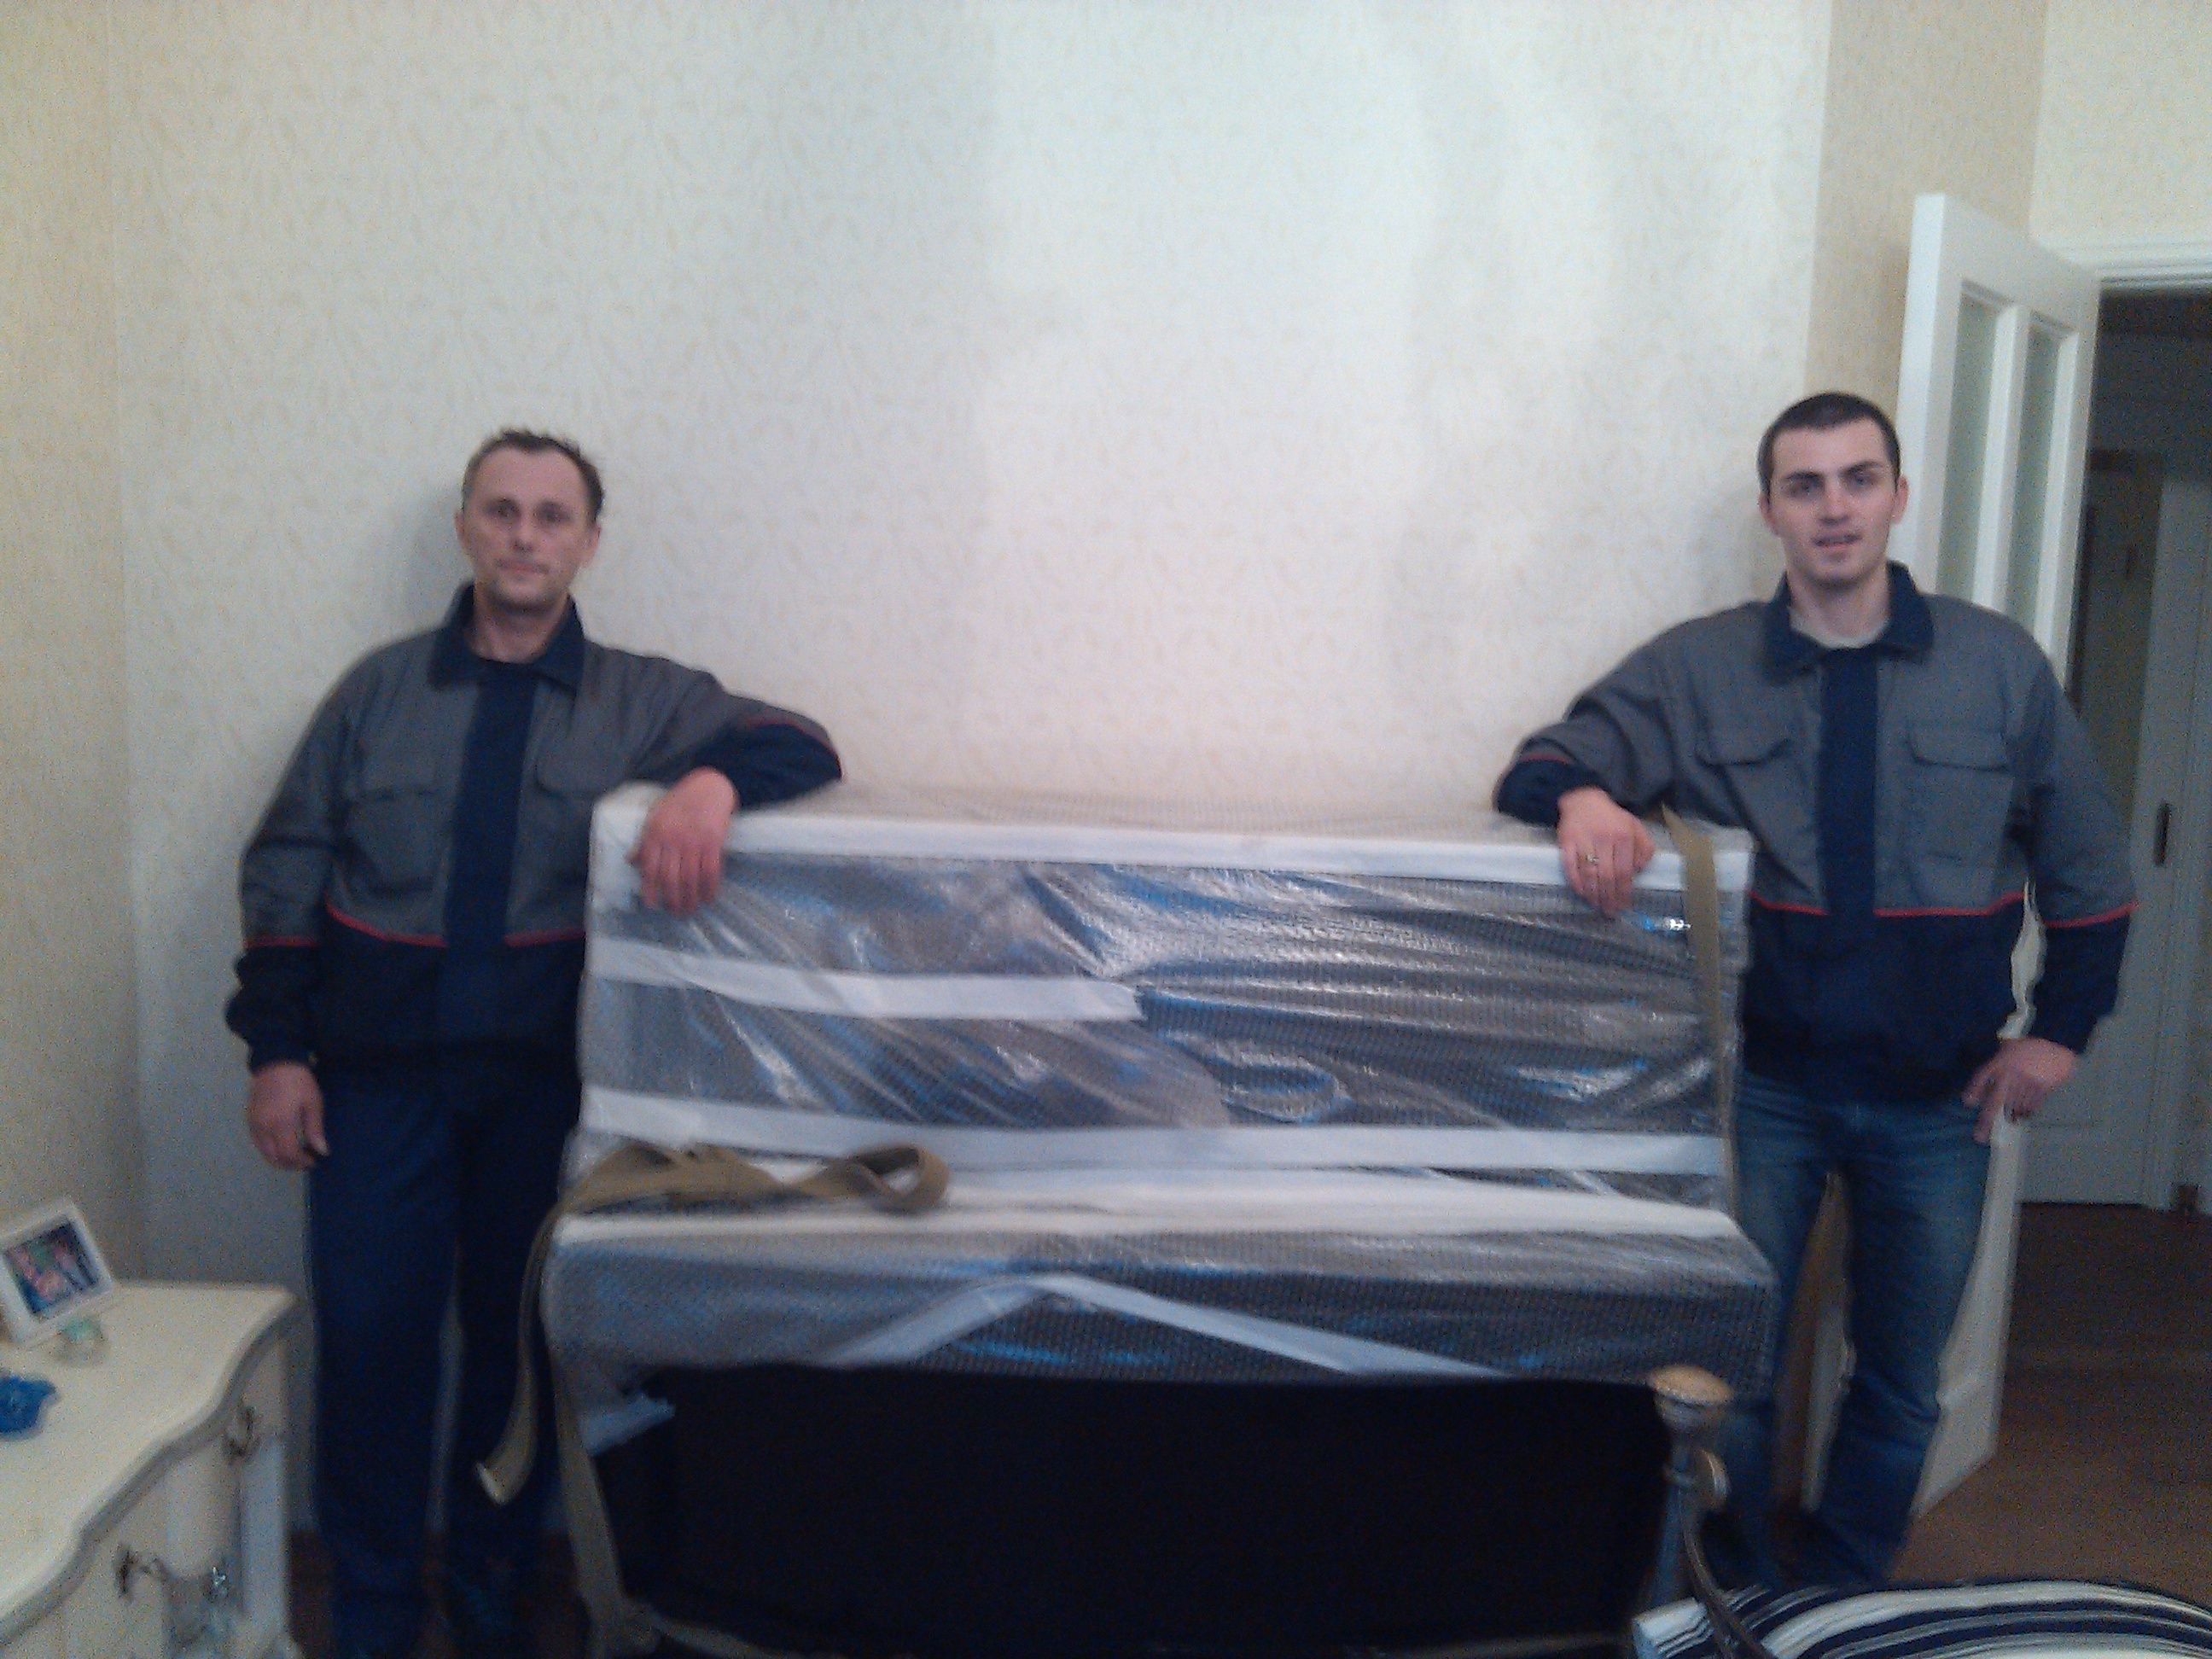 Перевозка квартир недорого перевозка пианино опытные грузчики
http://мегасервисспб.рф/kvartirnyy-pereezd/